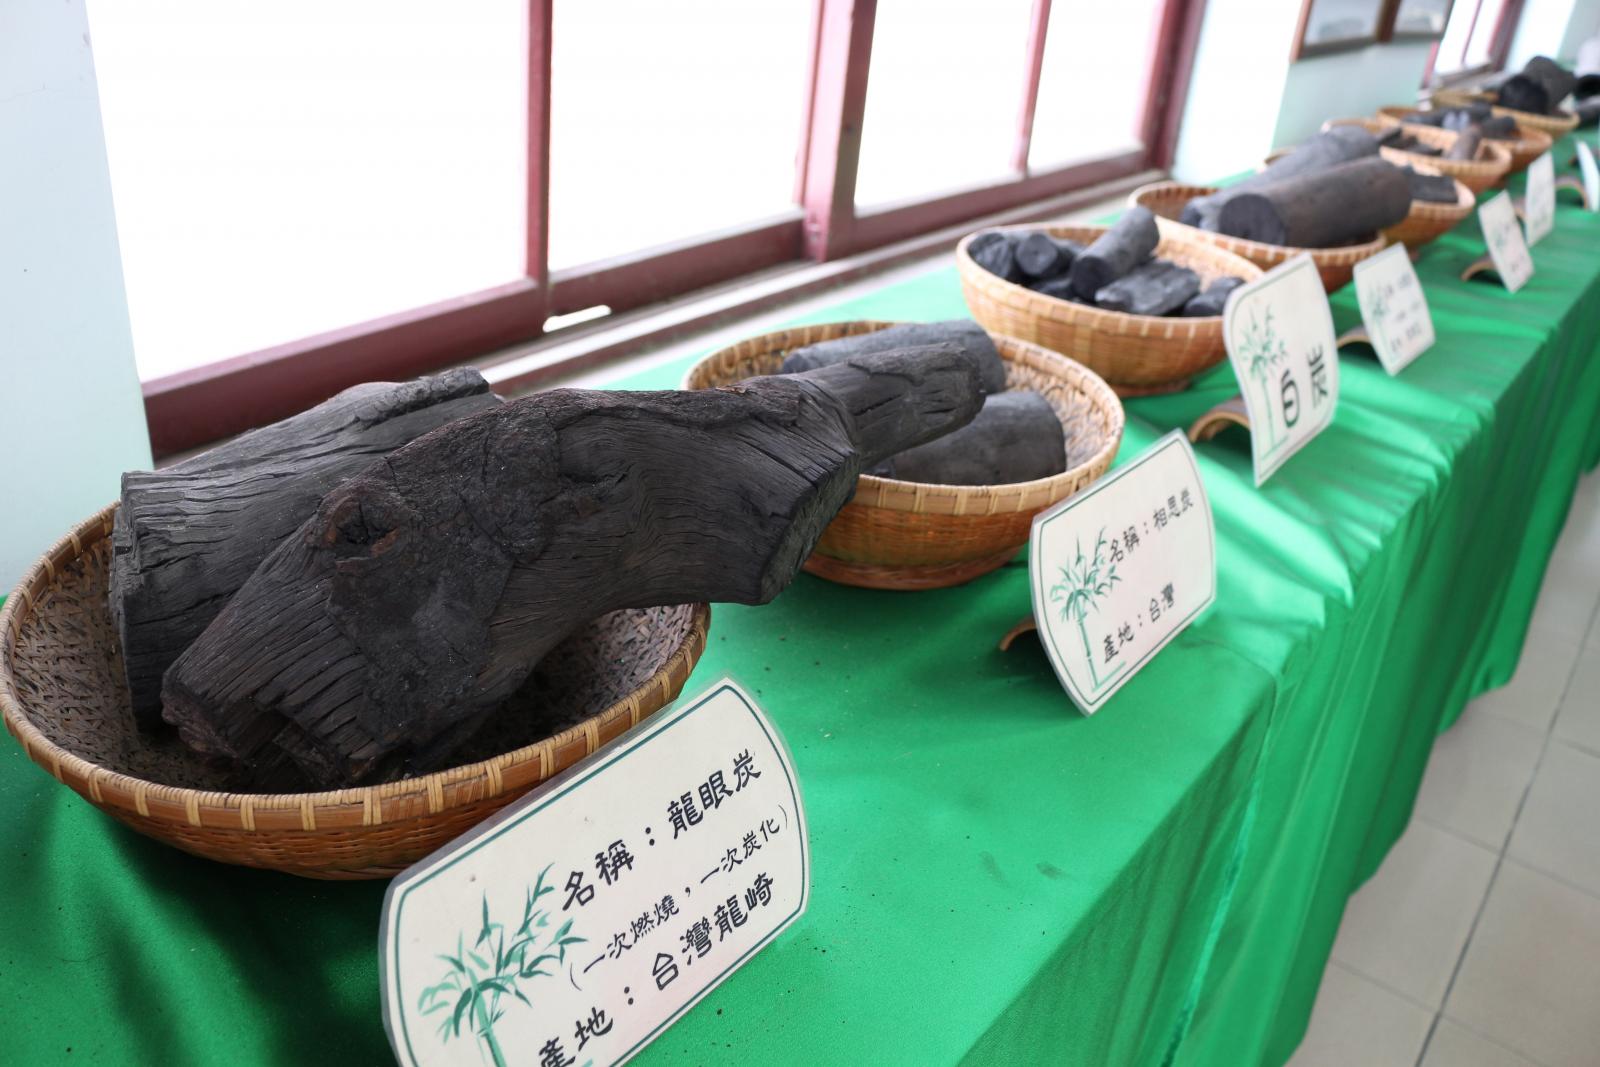 龍崎區竹炭故事館中陳列了台灣不同竹料做成的竹炭，供民眾認識、觀賞。